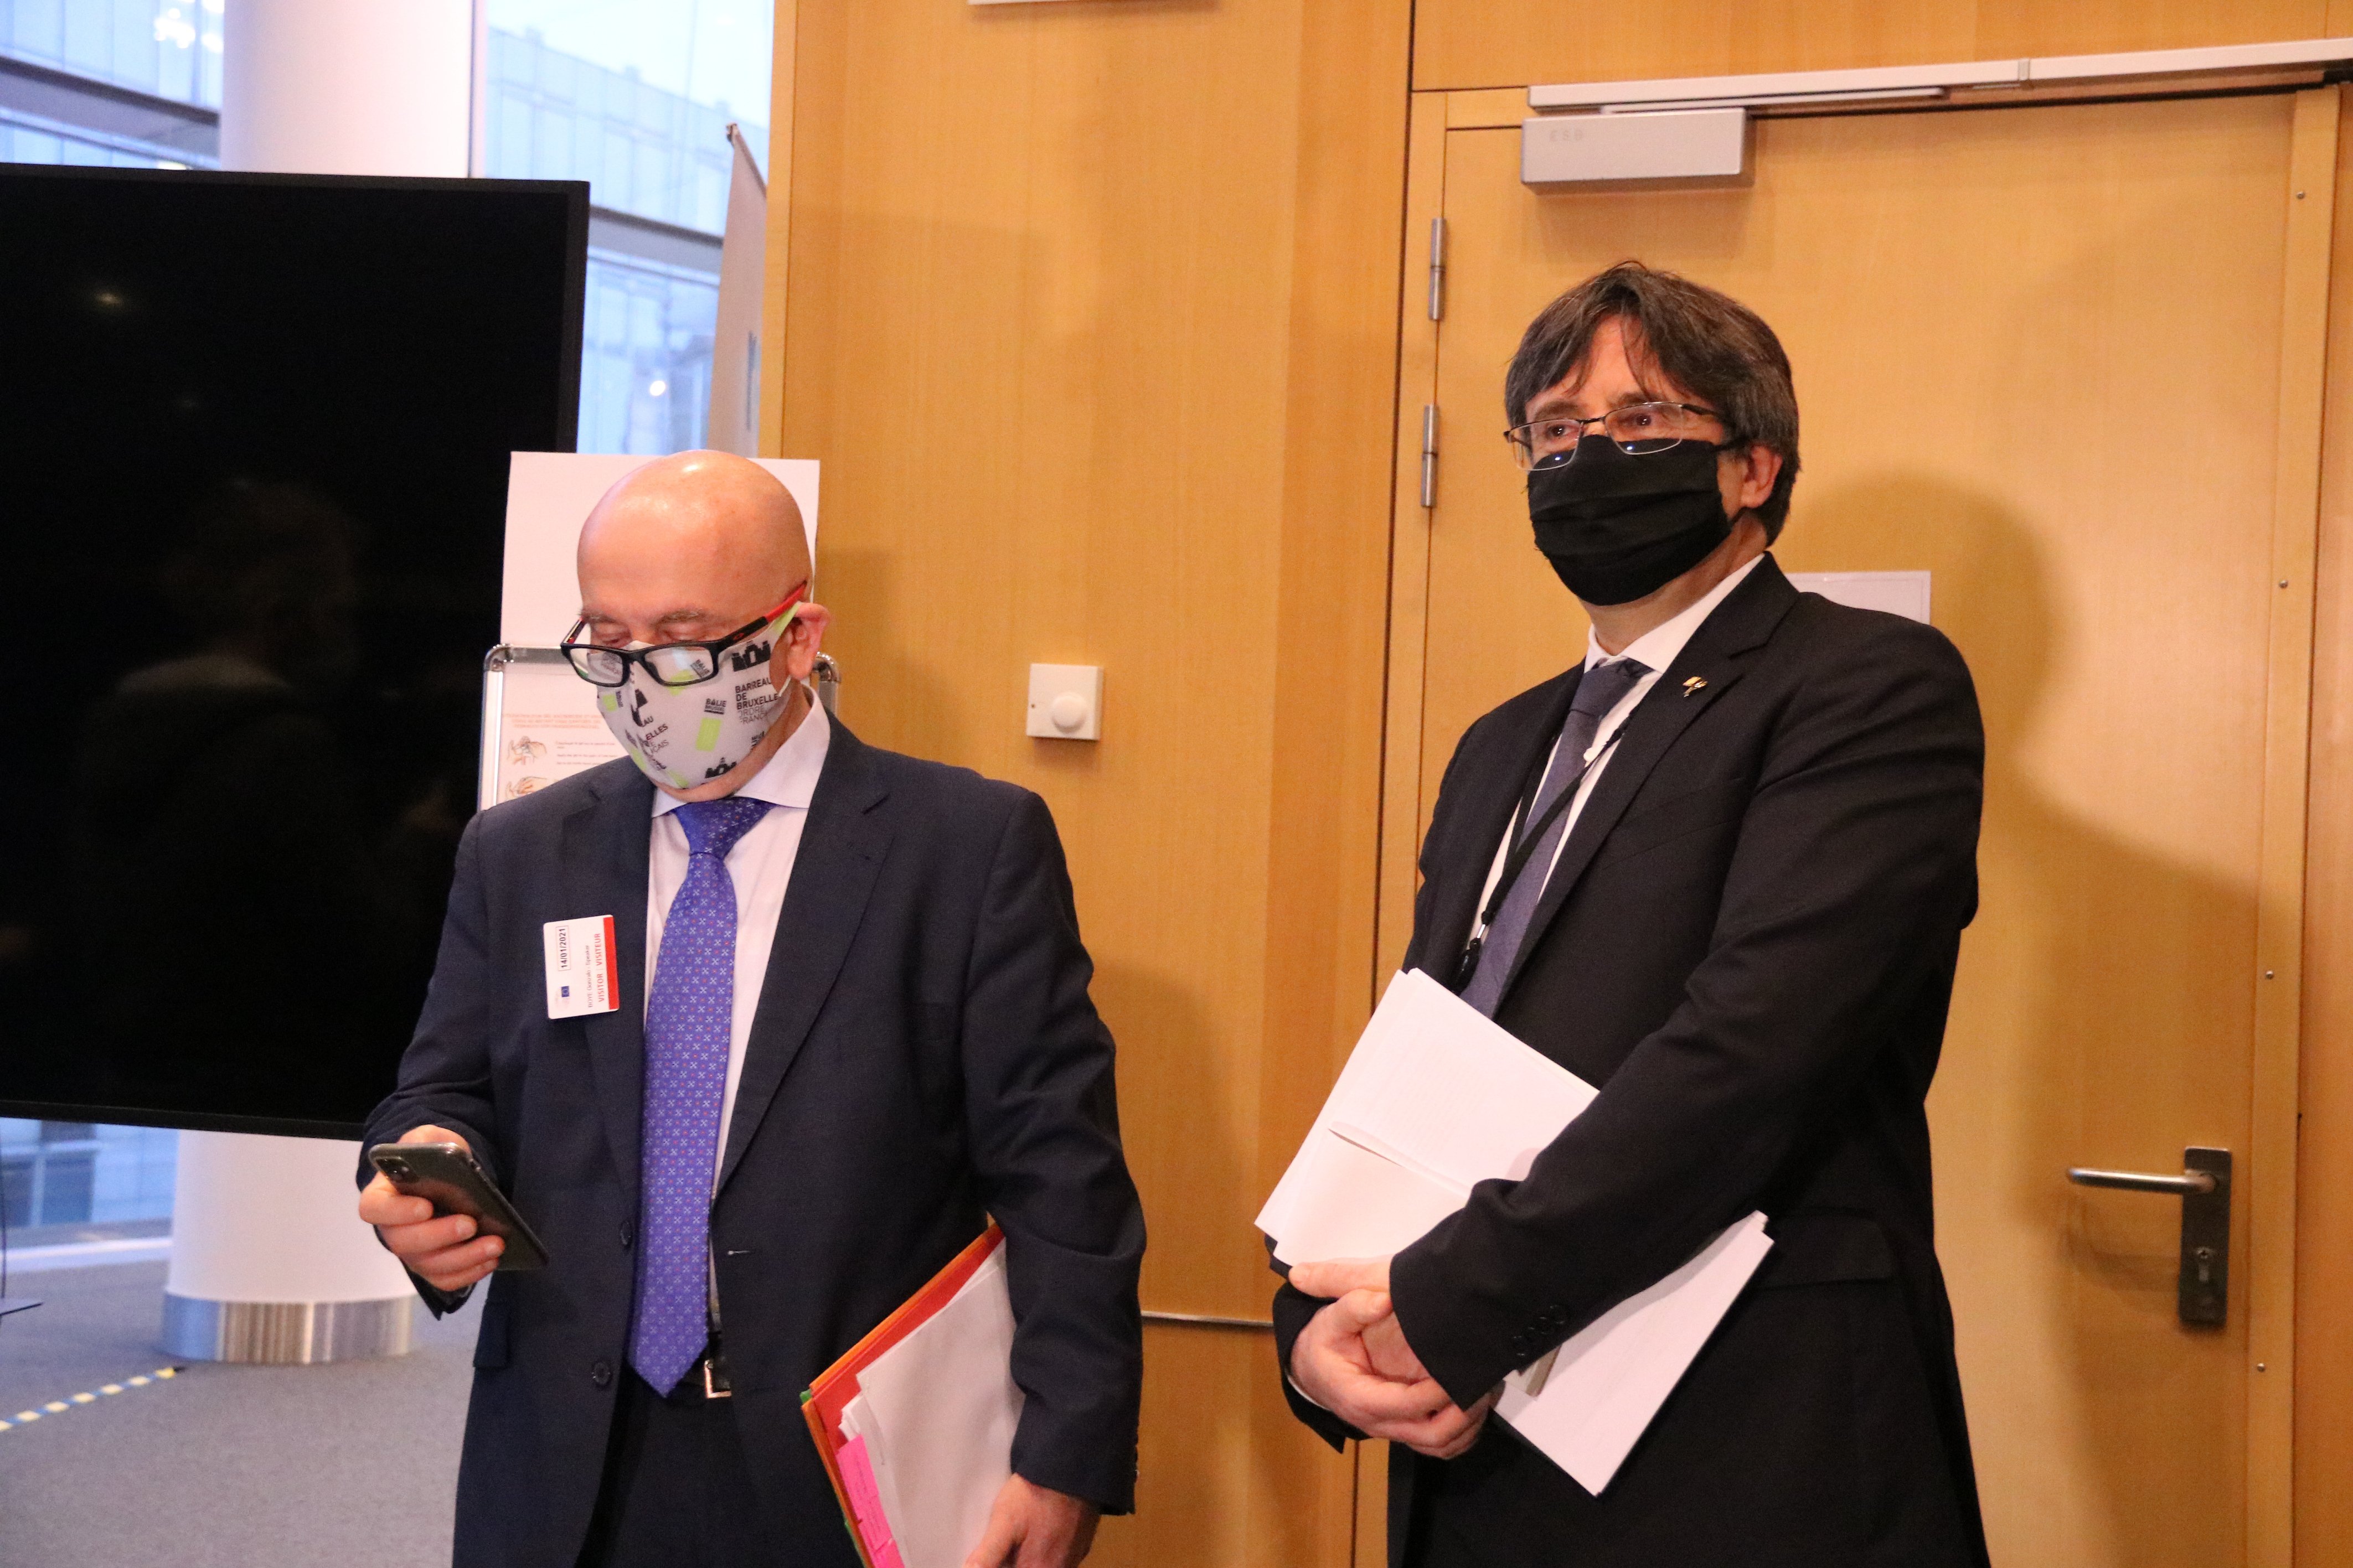 Indignation in European Parliament over leak of confidential report on Puigdemont